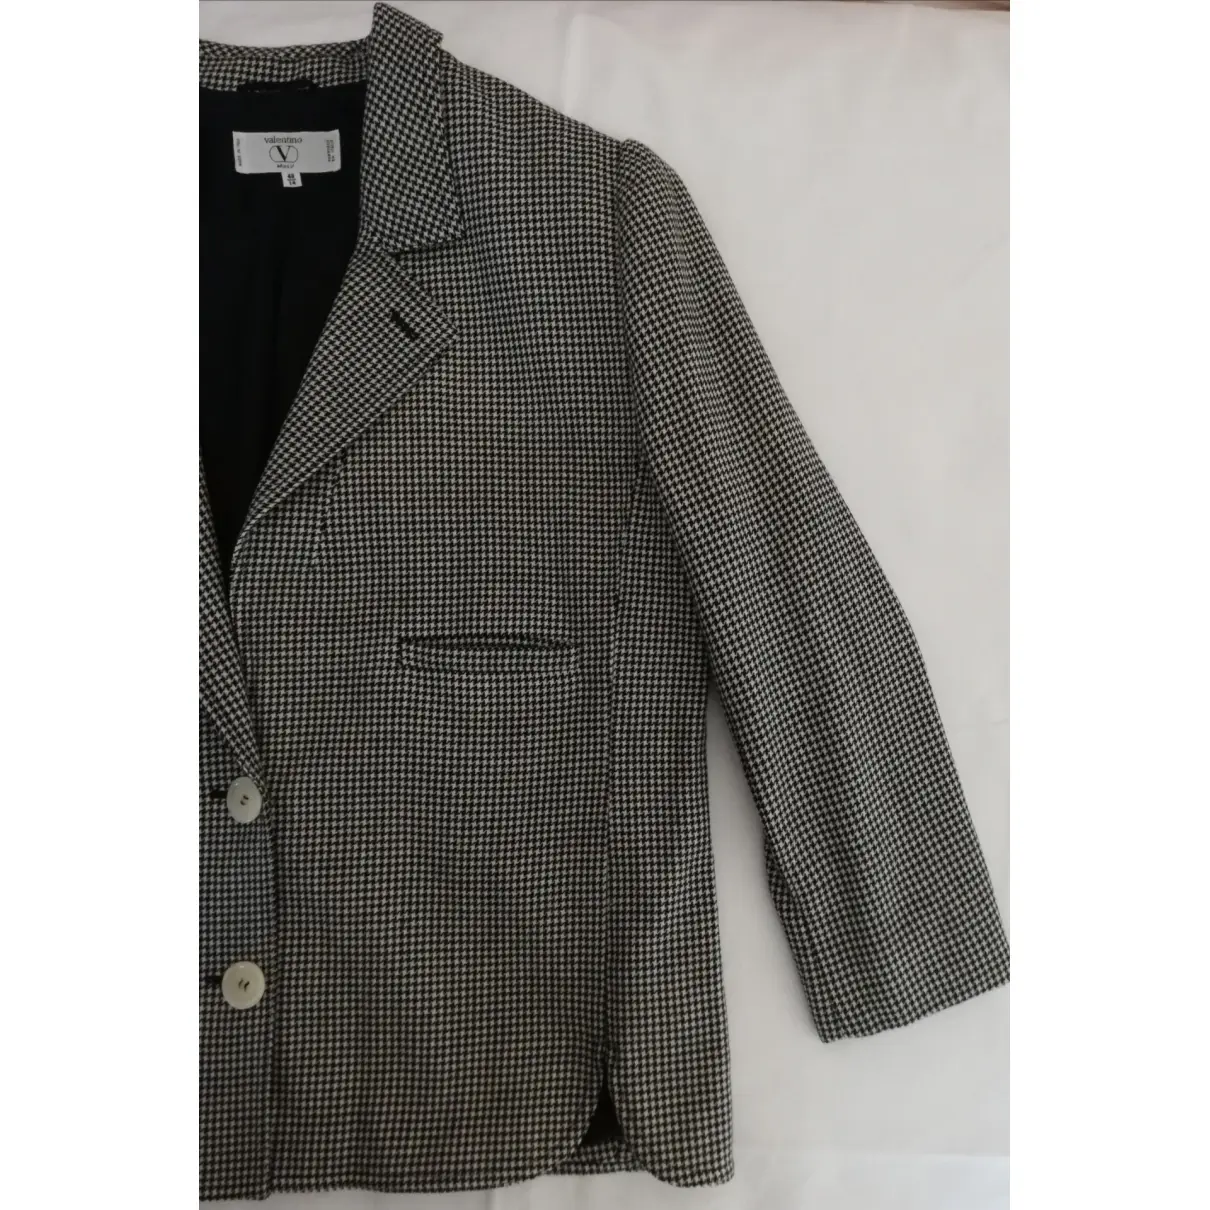 Valentino Garavani Wool blazer for sale - Vintage